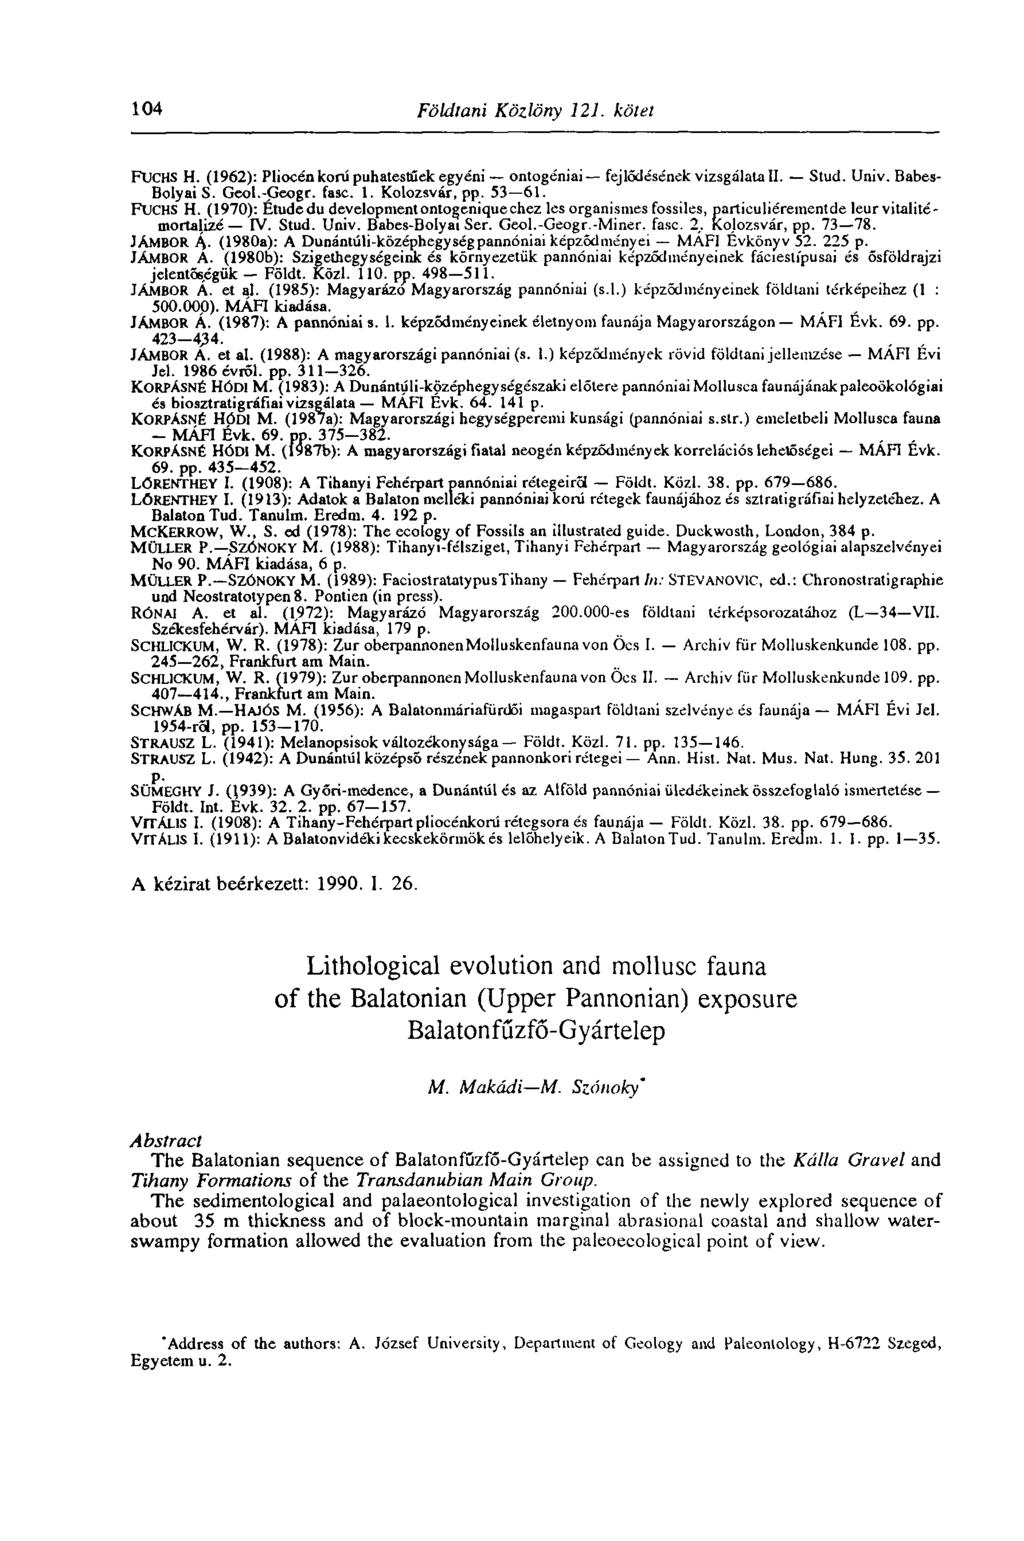 104 Földtani Közlöny 121. kötet FUCHS H. (1962): Pliocén korú puhatestűek egyéni ontogéniai fejlődésének vizsgálata II. Stud. Univ. Babes- Bolyai S. Geol.-Geogr. fasc. 1. Kolozsvár, pp. 53 61.